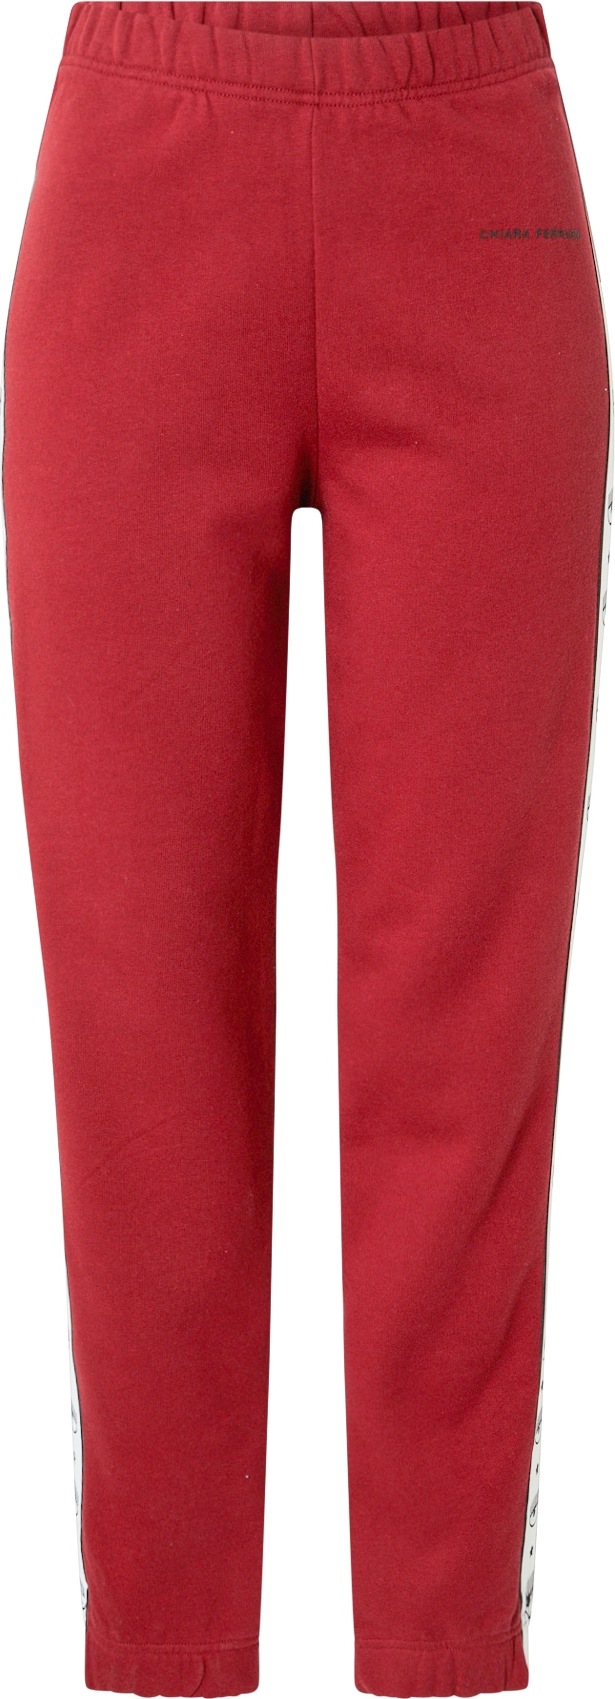 Chiara Ferragni Kalhoty světlemodrá / červená / černá / bílá